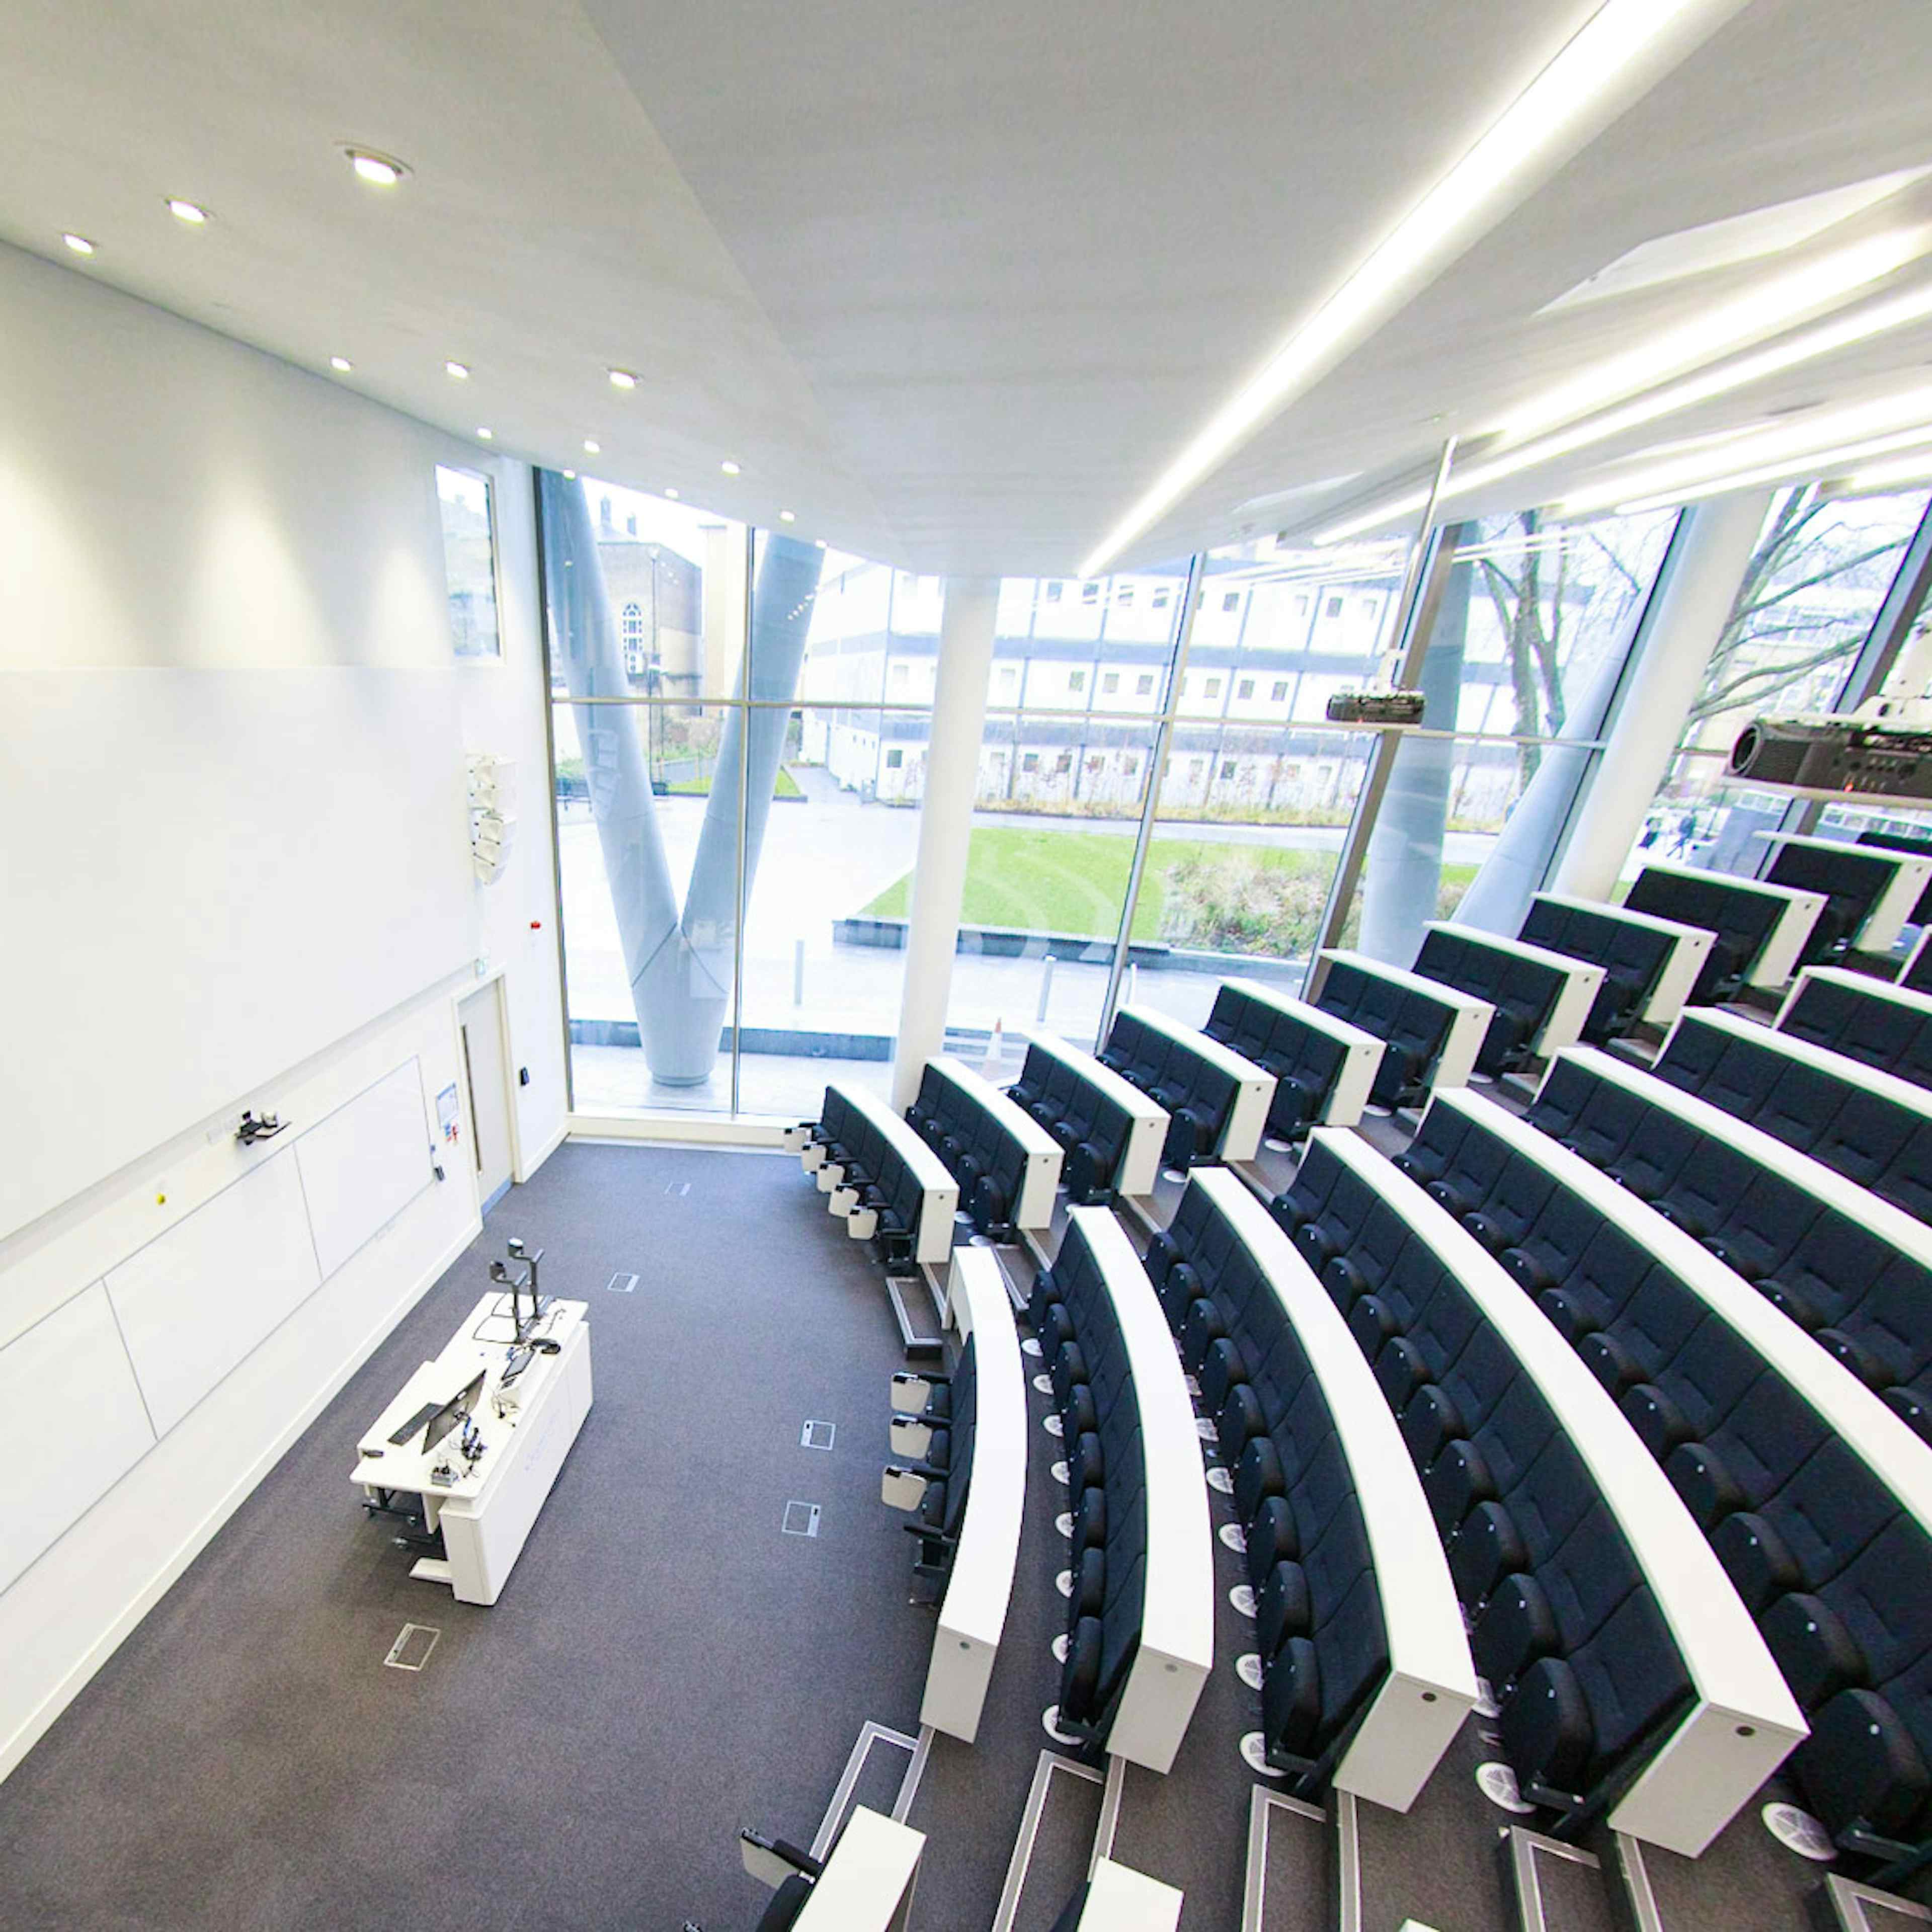 Graduate Centre - Queen Mary Venues - Peston Lecture Theatre image 2